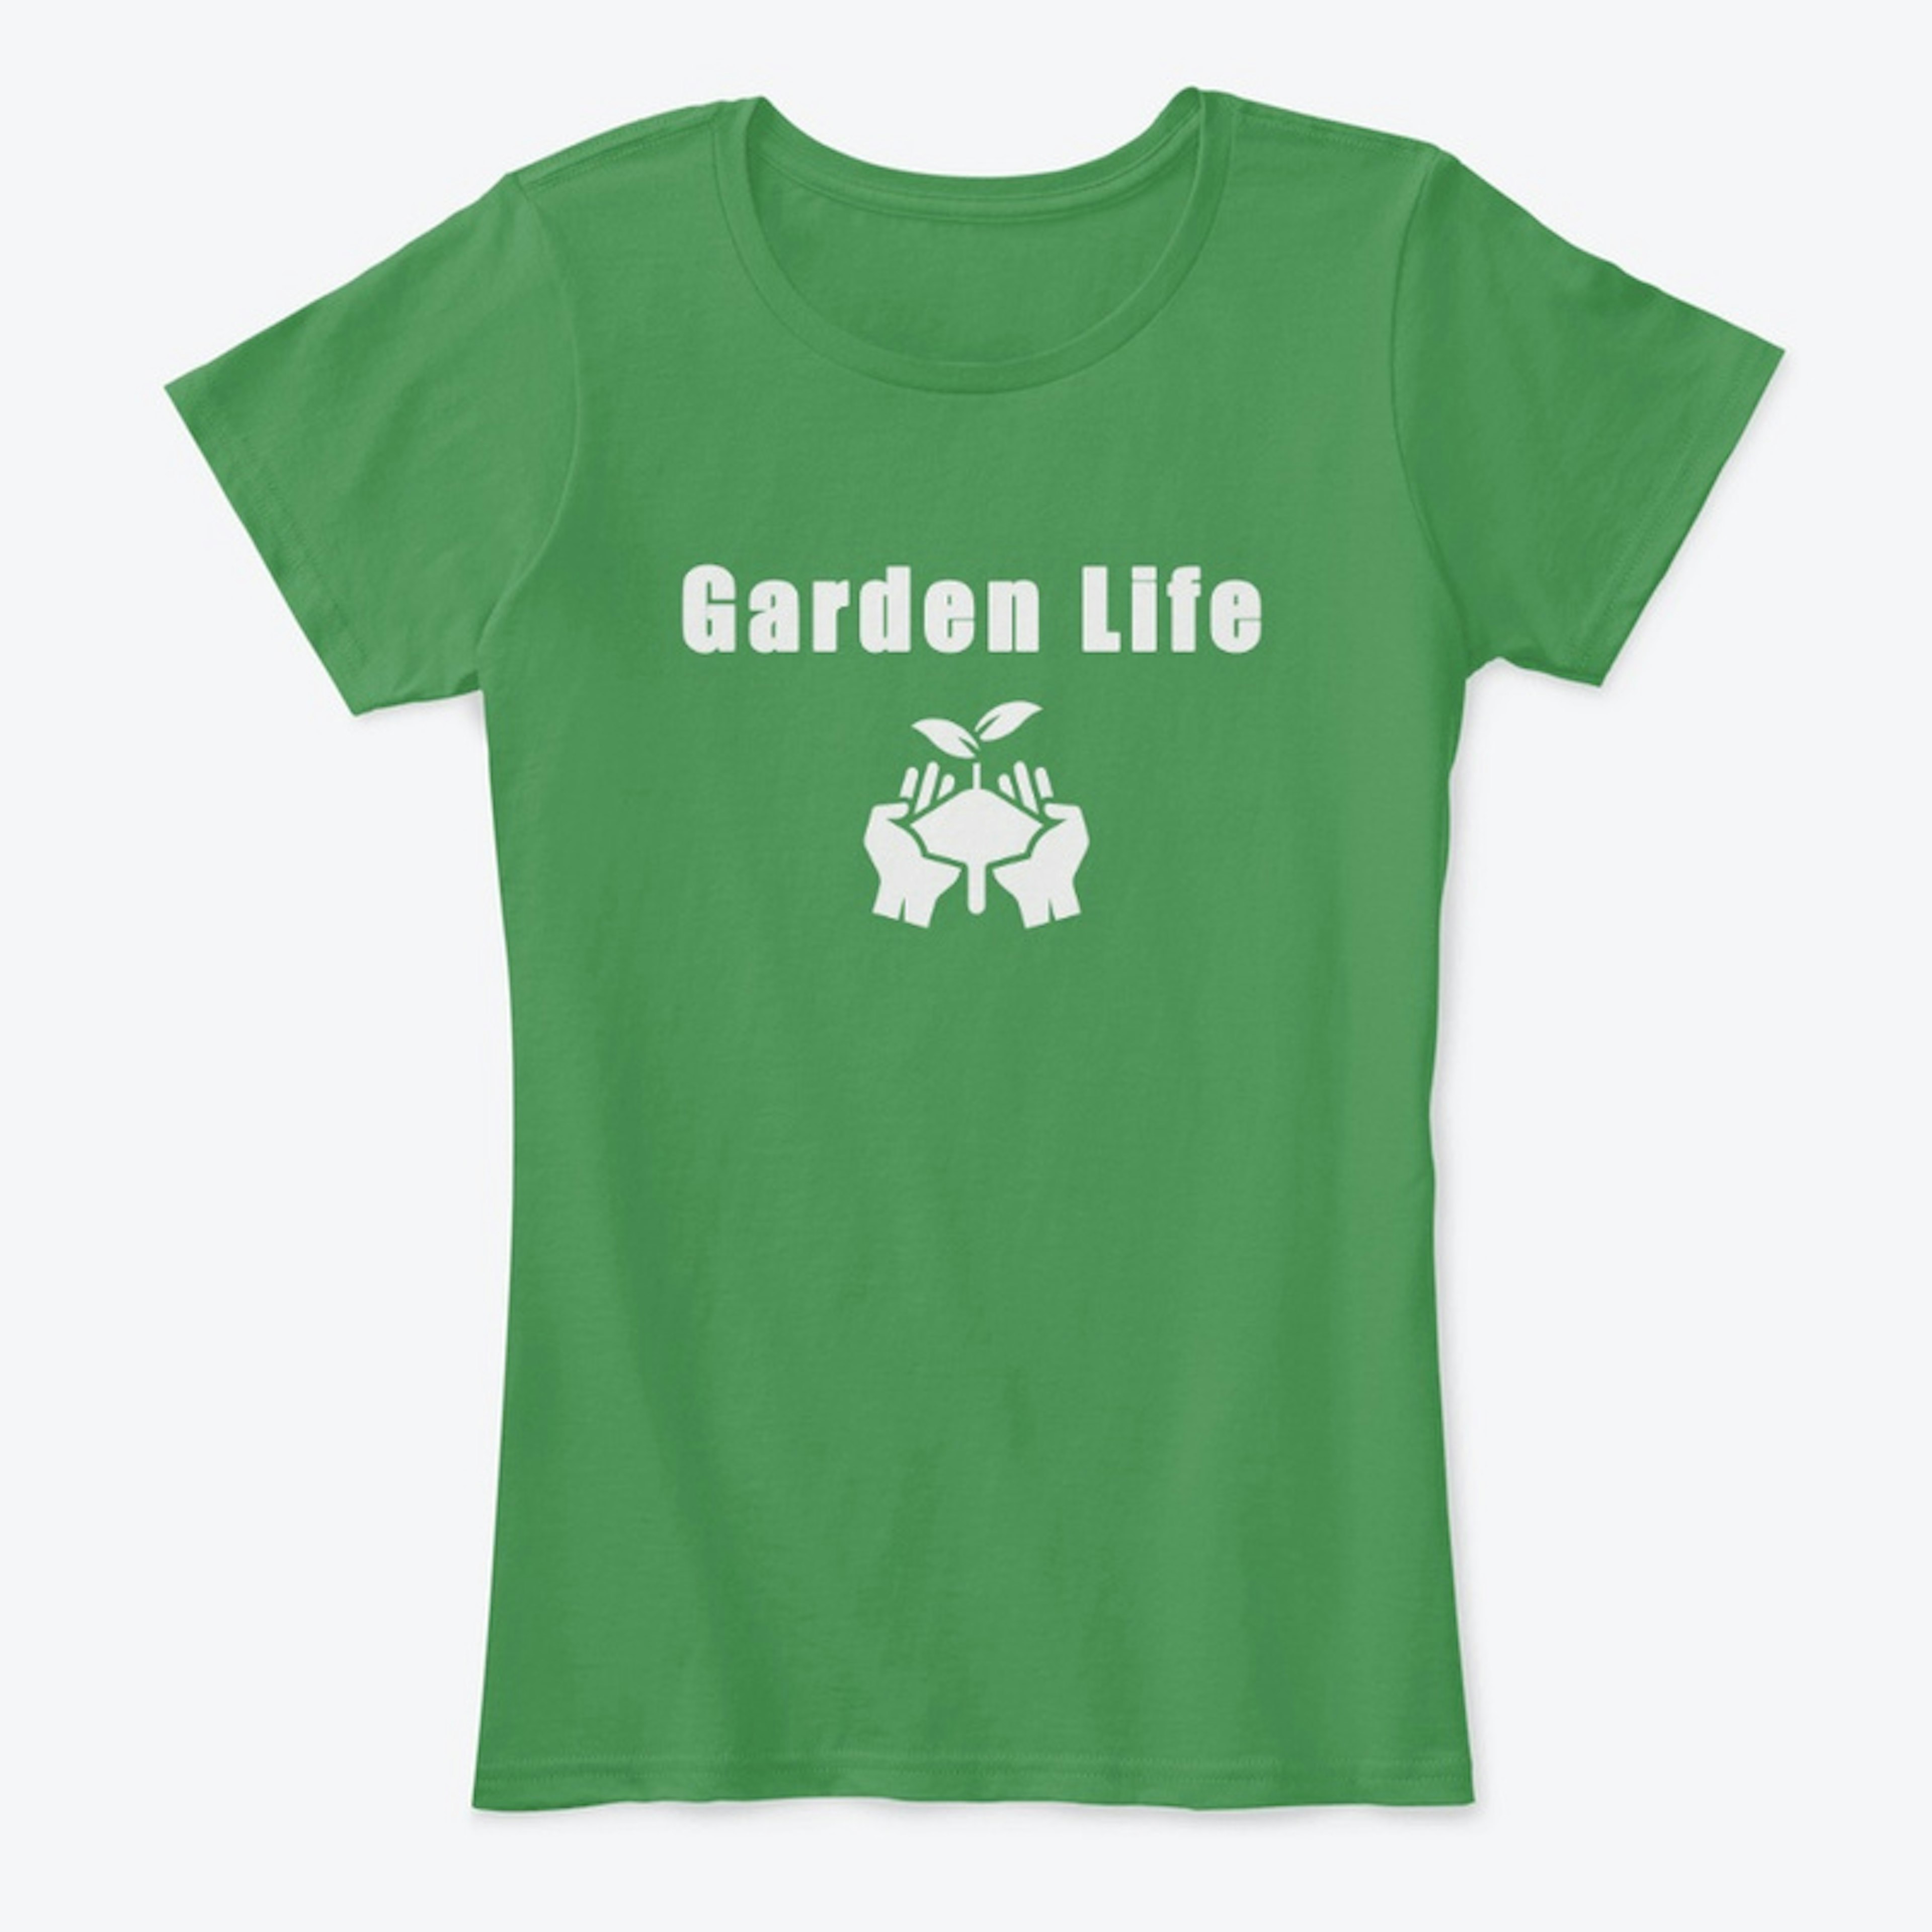 Garden life